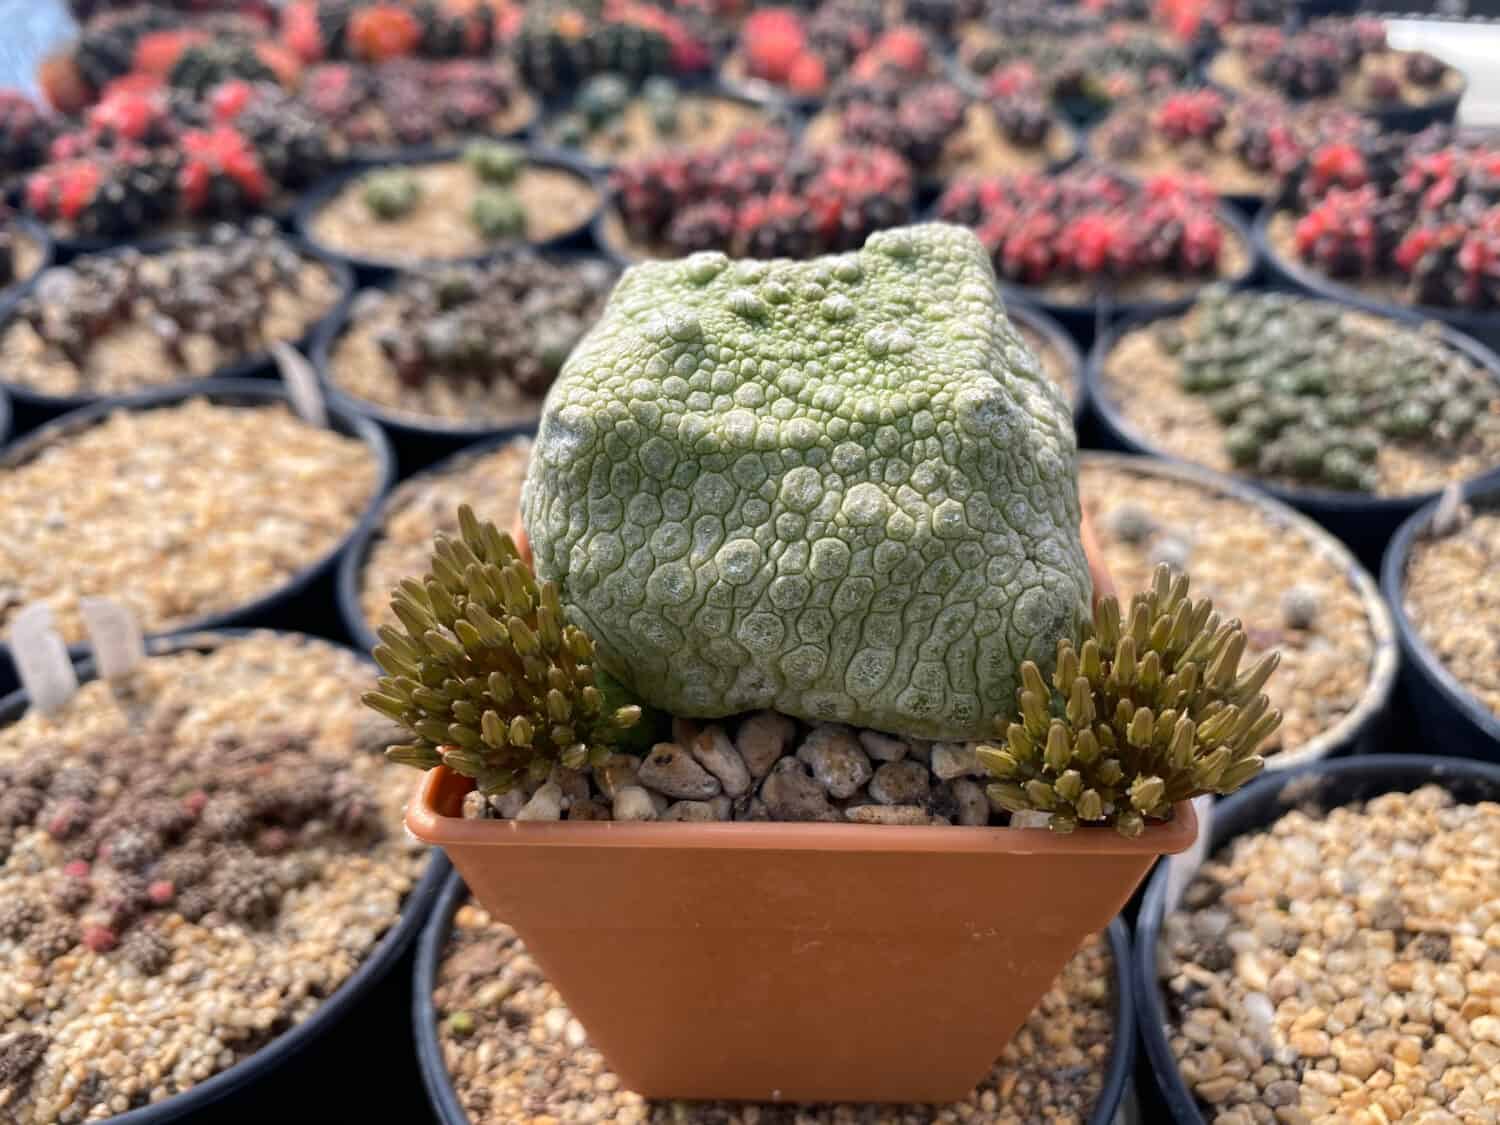 Plants Pseudolithos cubiformis Cactus litop